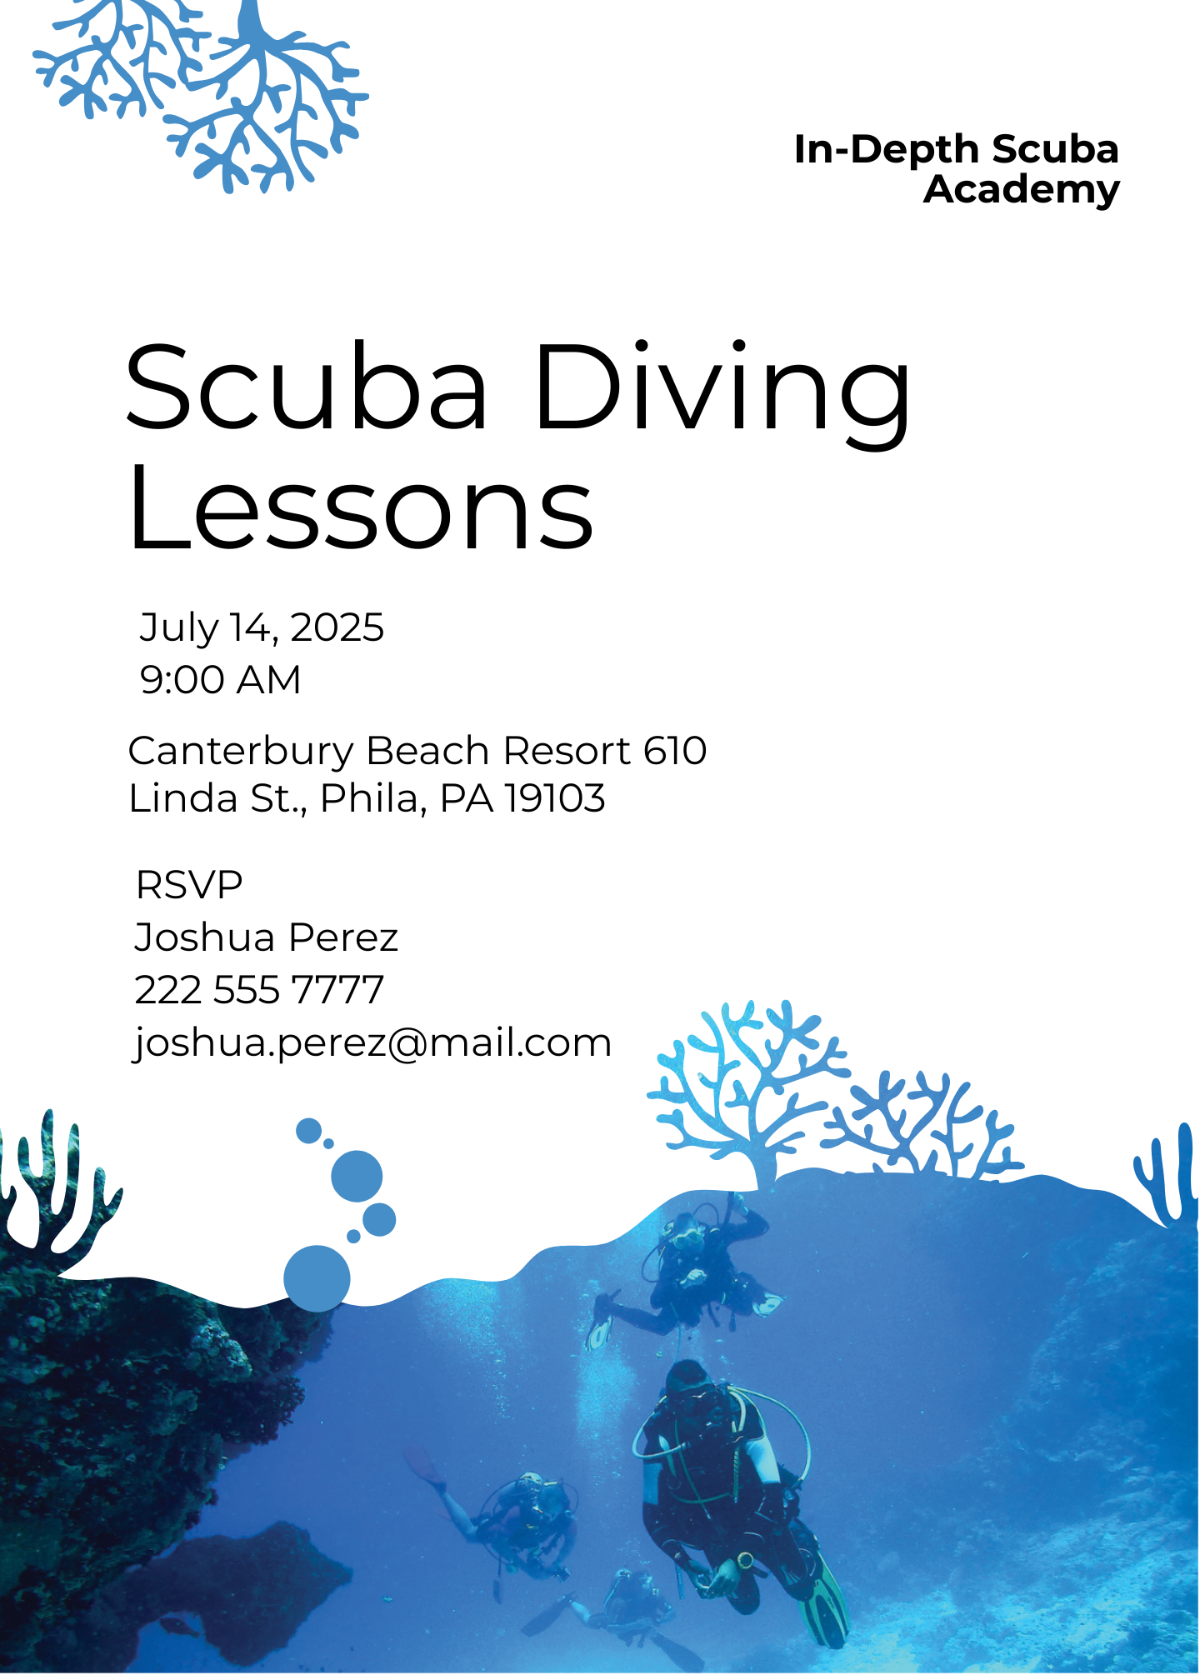 Scuba Diving School Invitation